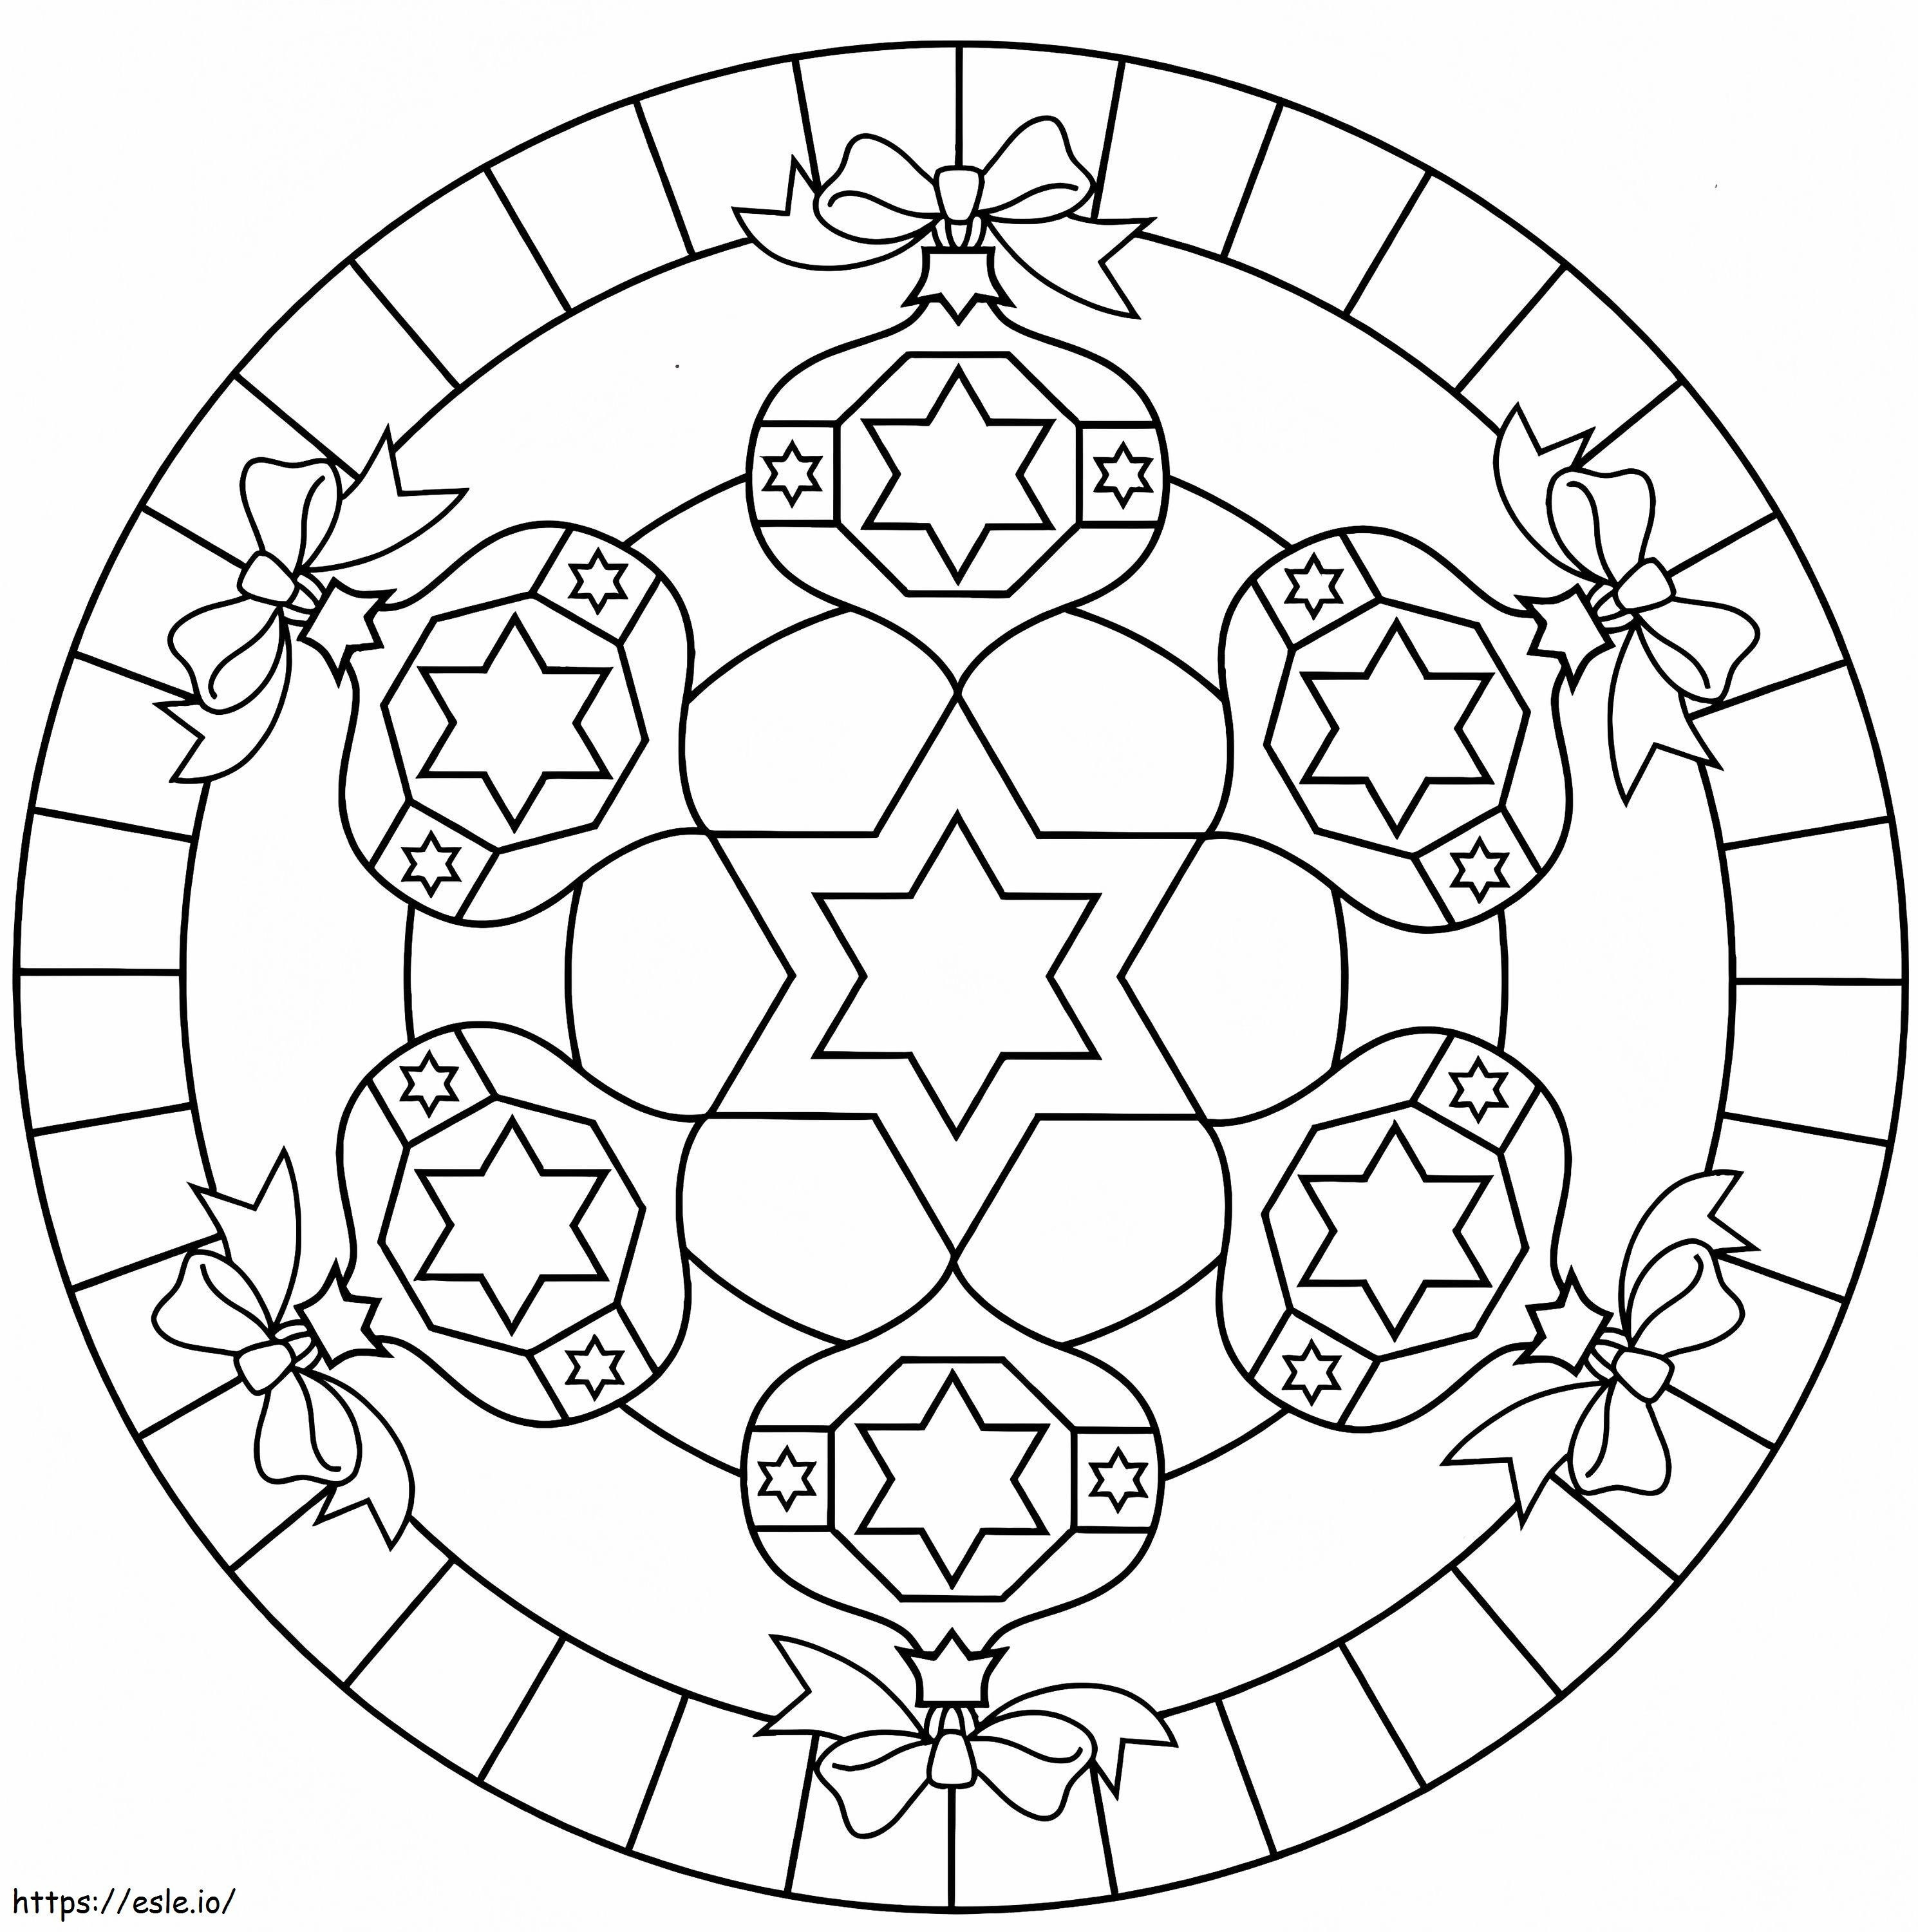 Heksagramlı Mandala boyama